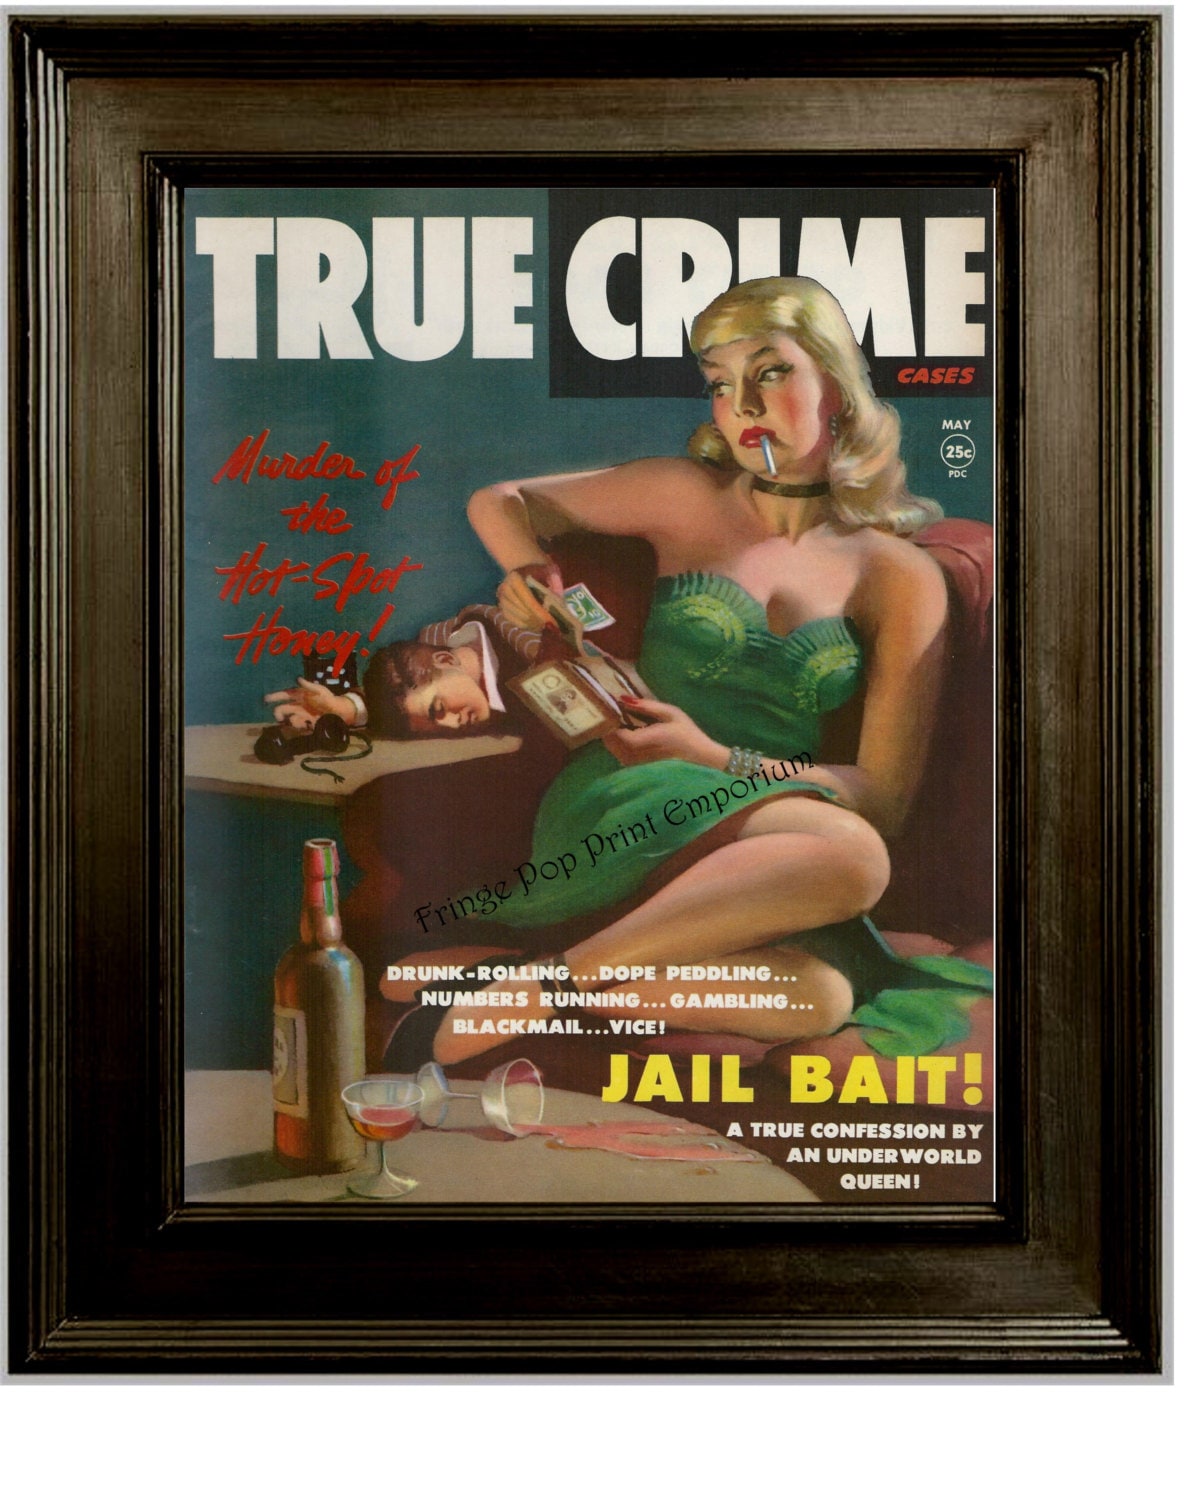 Detective Magazine Art Print 8 X 10 1950s Femme Fatale